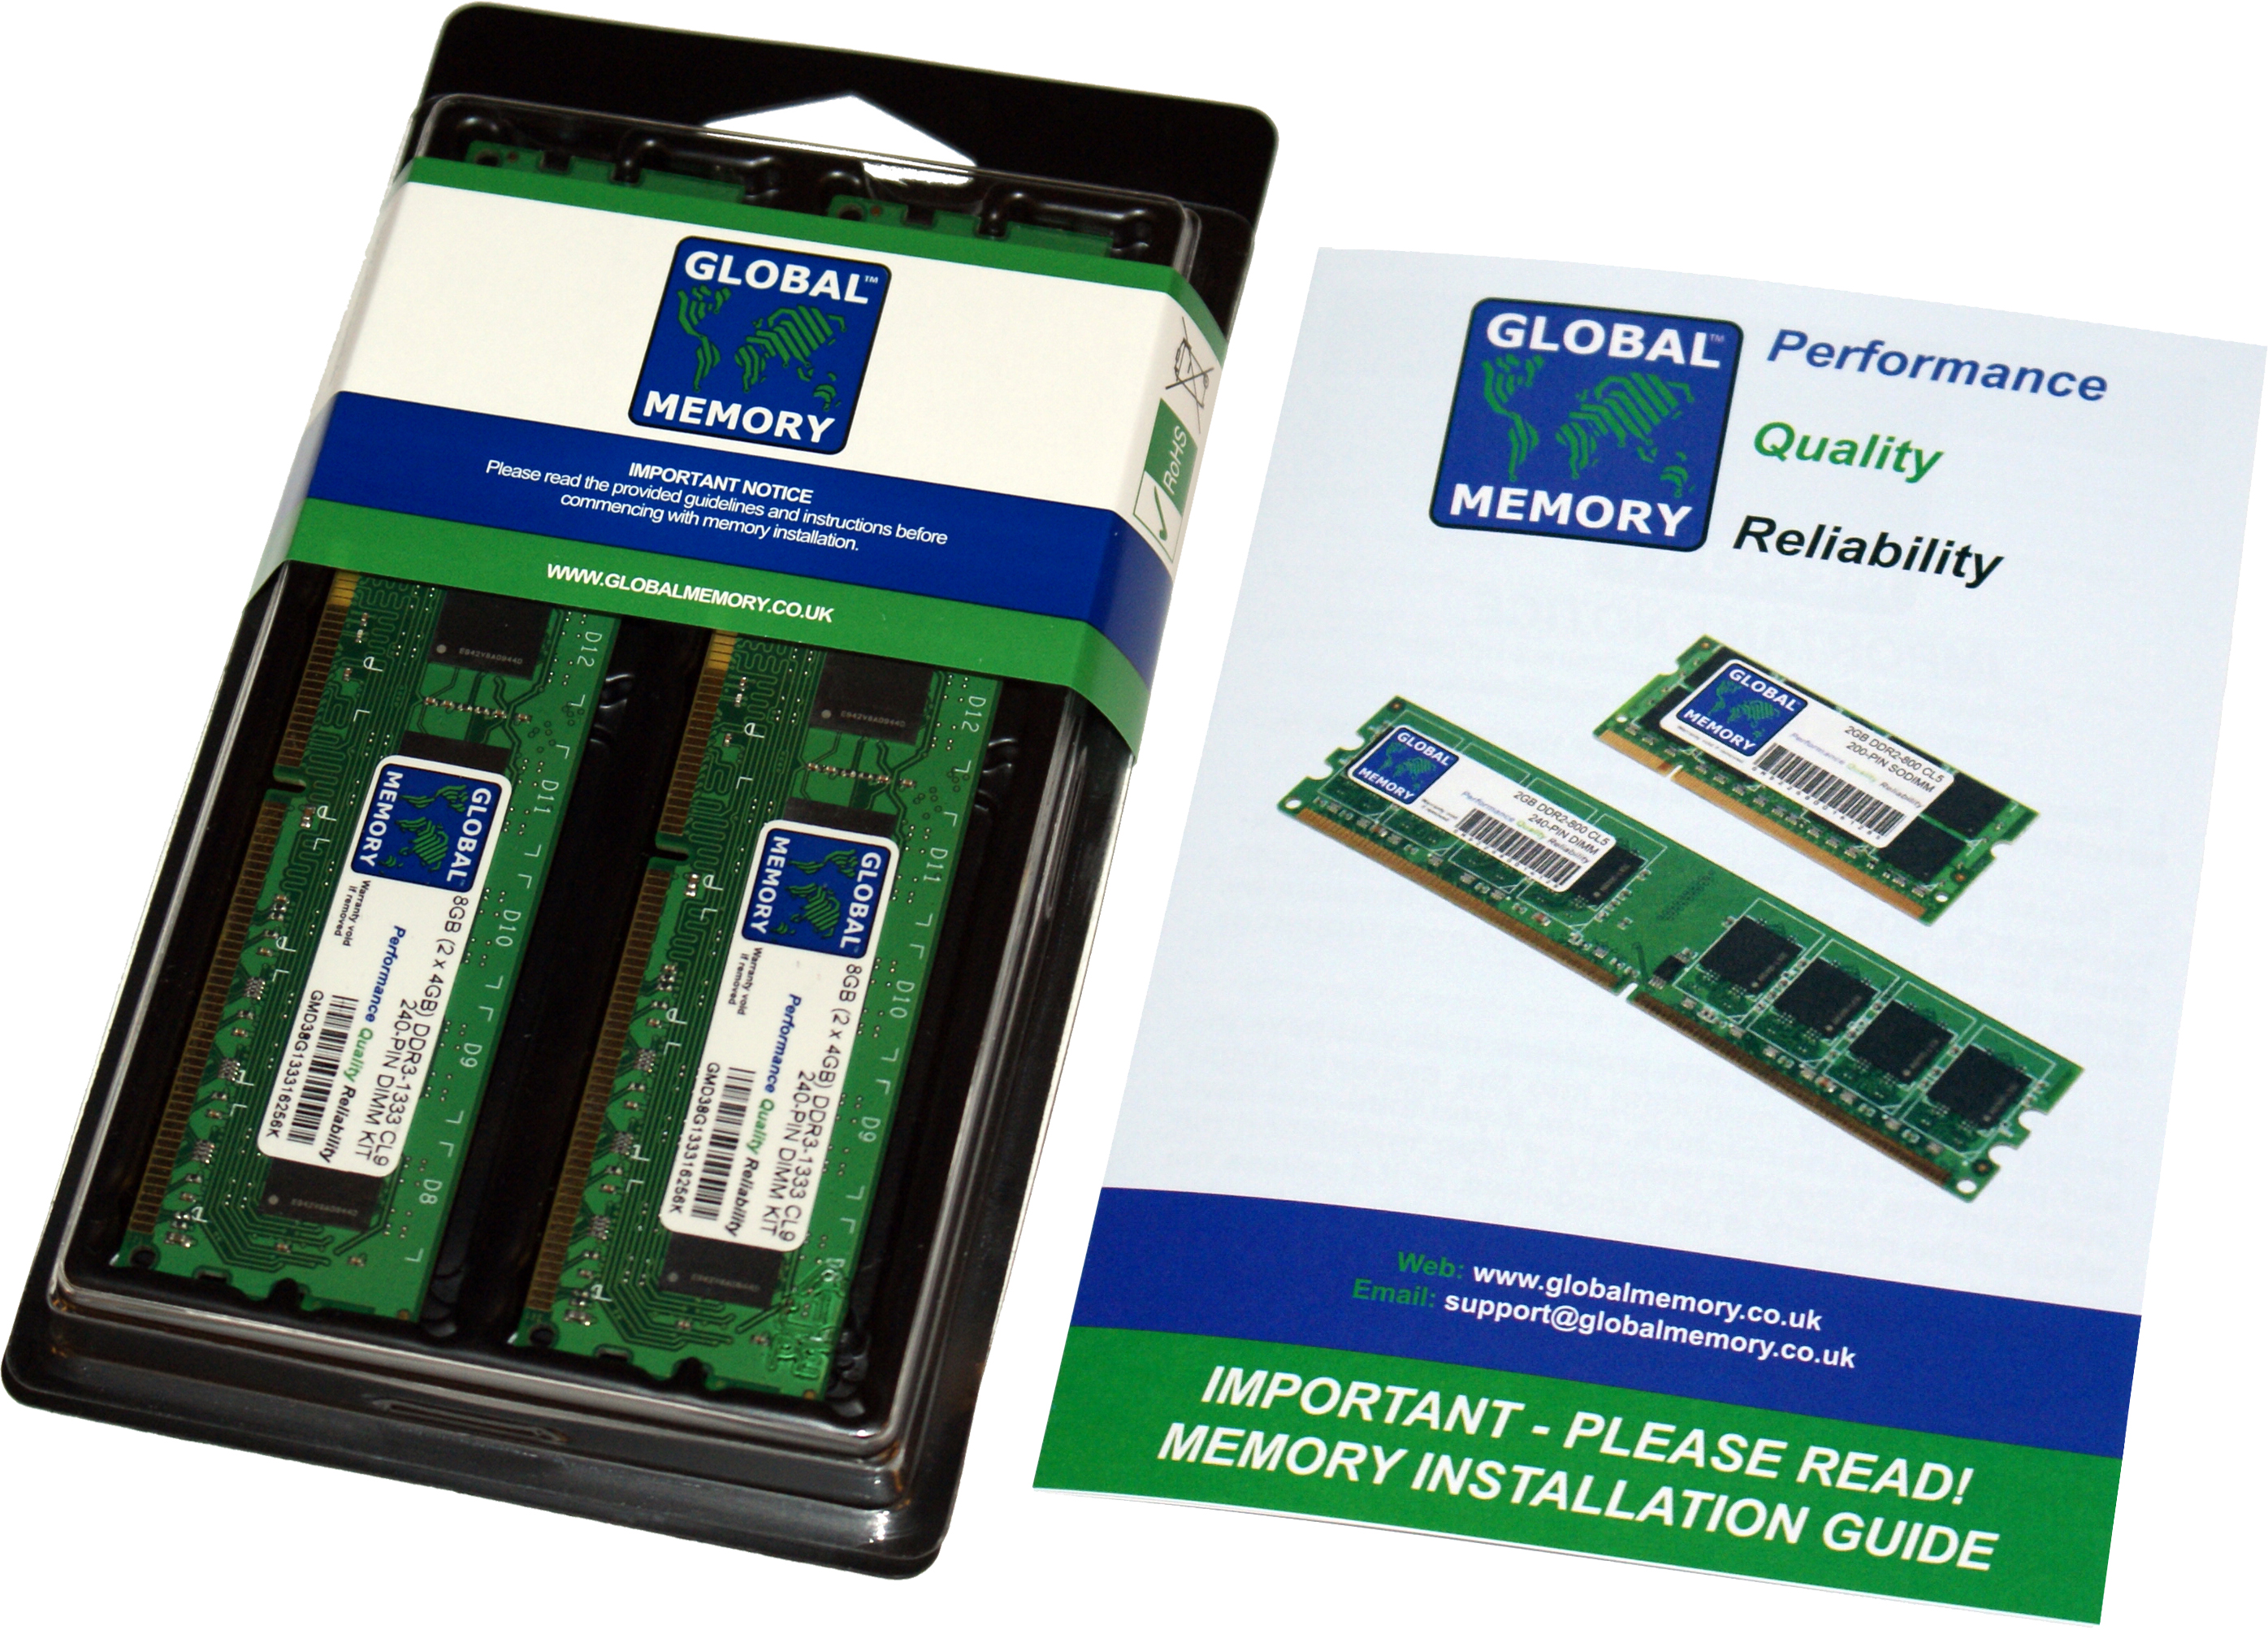 8GB (2 x 4GB) DDR3 1866MHz PC3-14900 240-PIN DIMM MEMORY RAM KIT FOR HEWLETT-PACKARD DESKTOPS